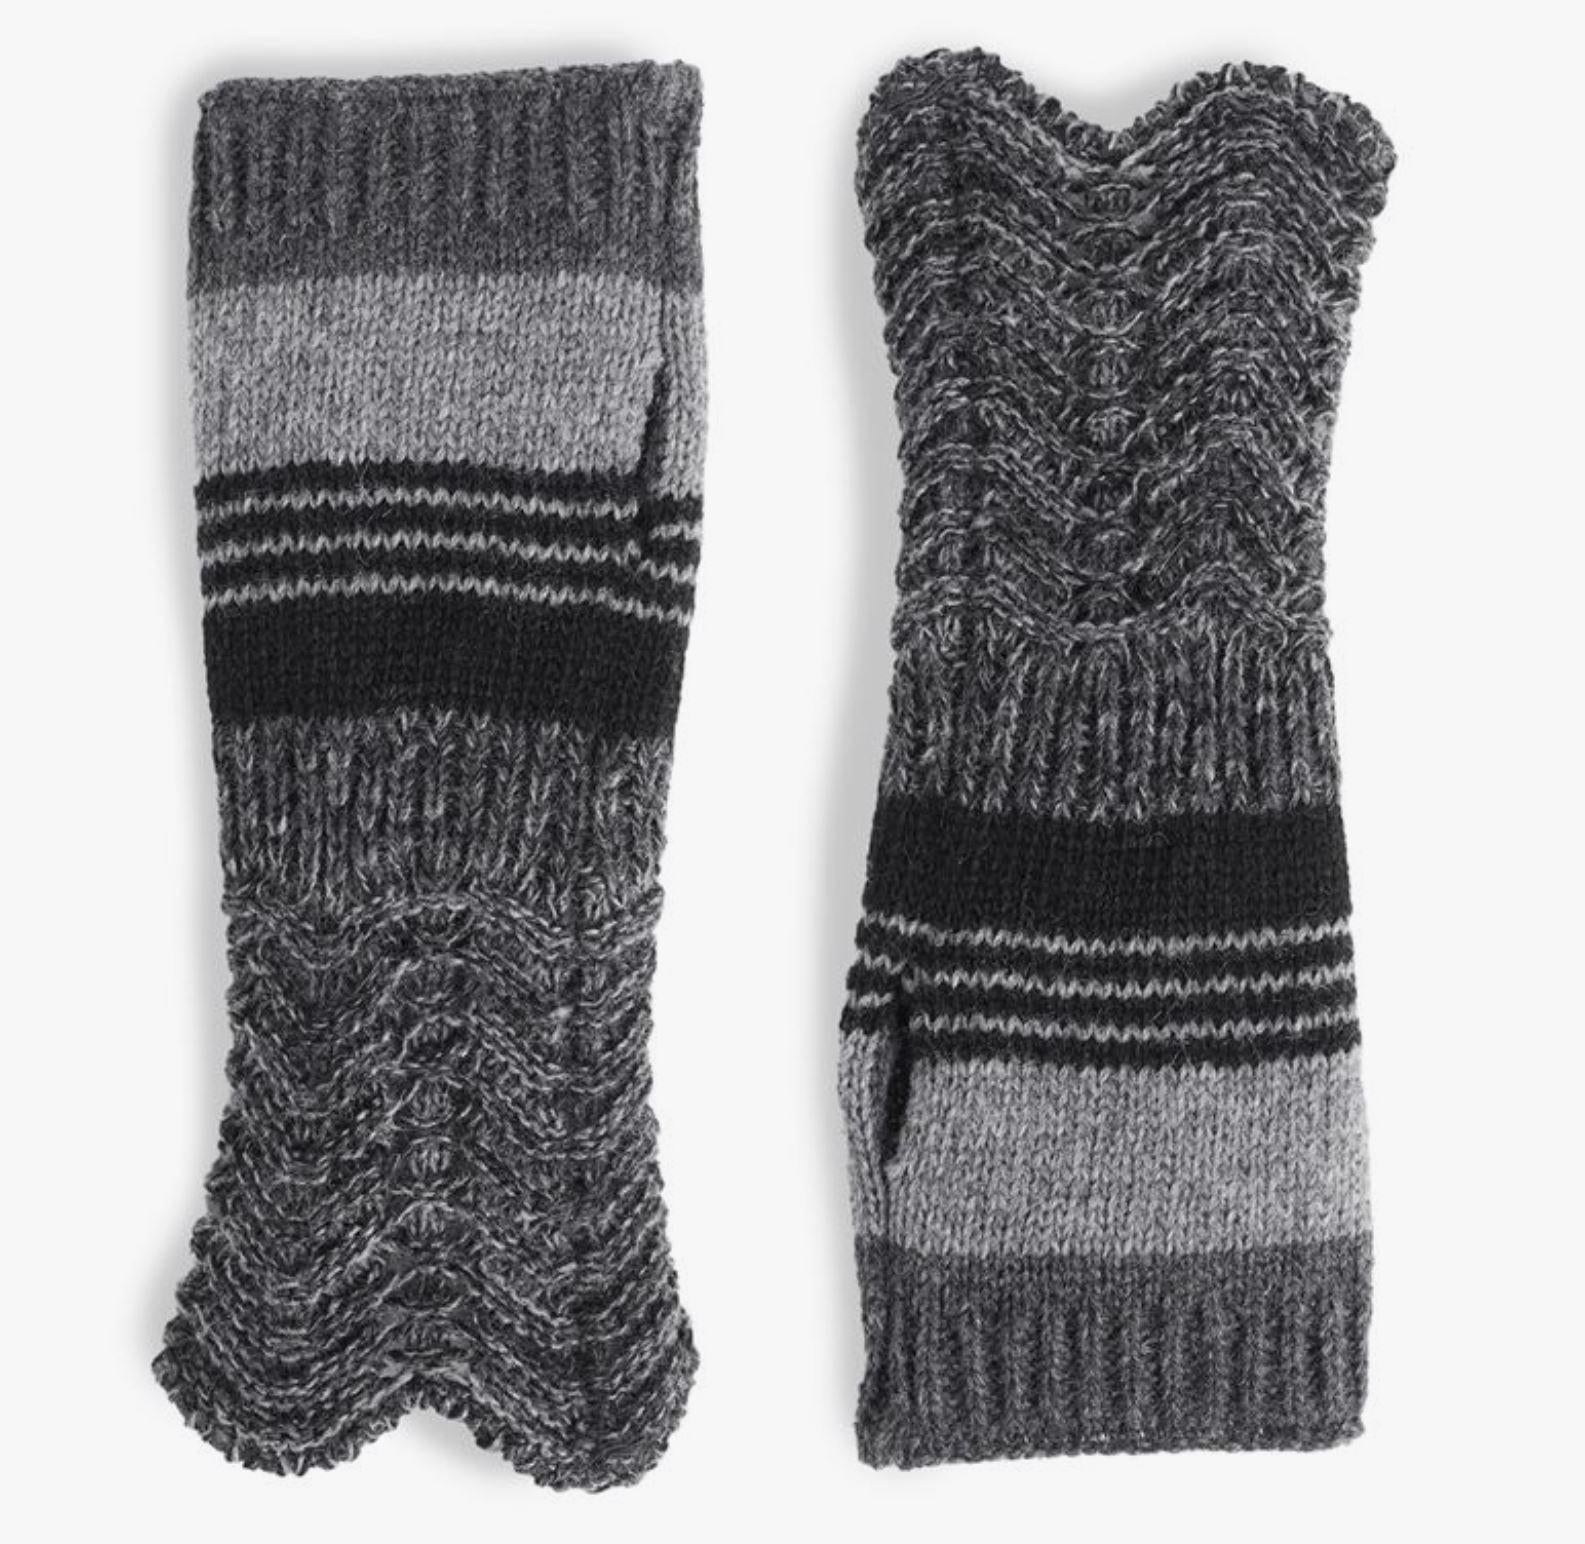 Knit Fingerless Gloves, Black